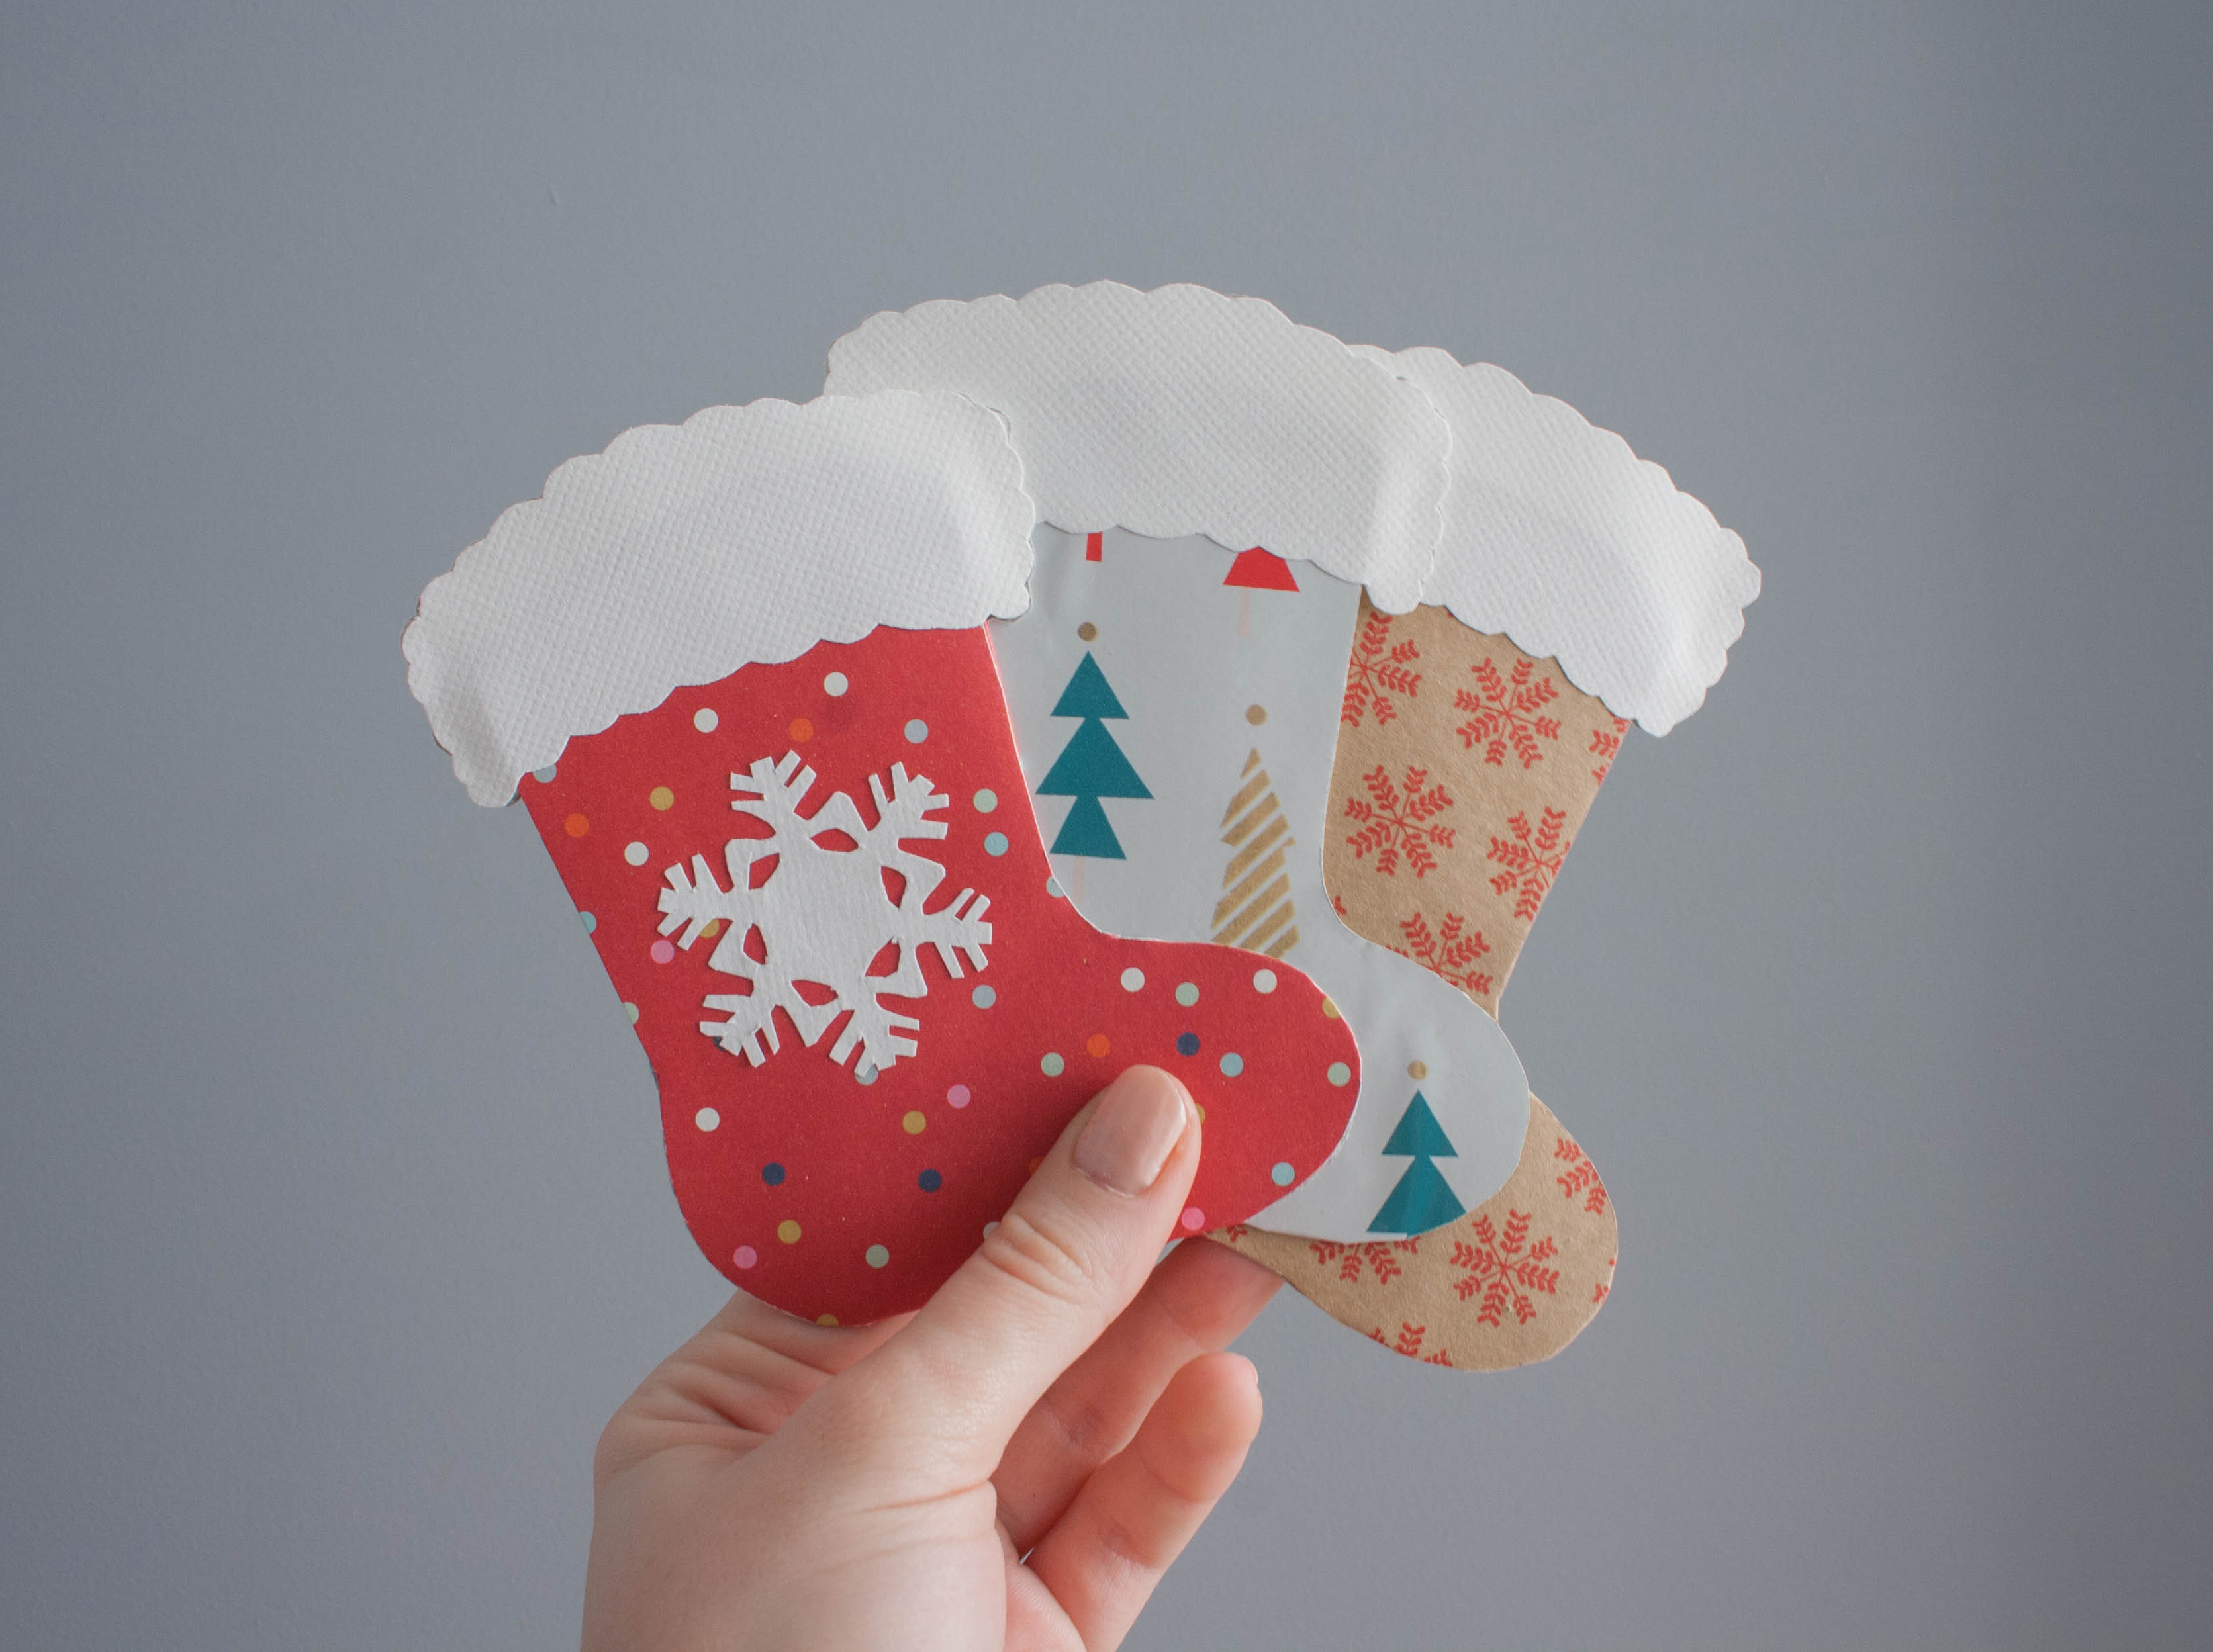 Easy handmade Christmas cards and gift tags - Christmas stockings!